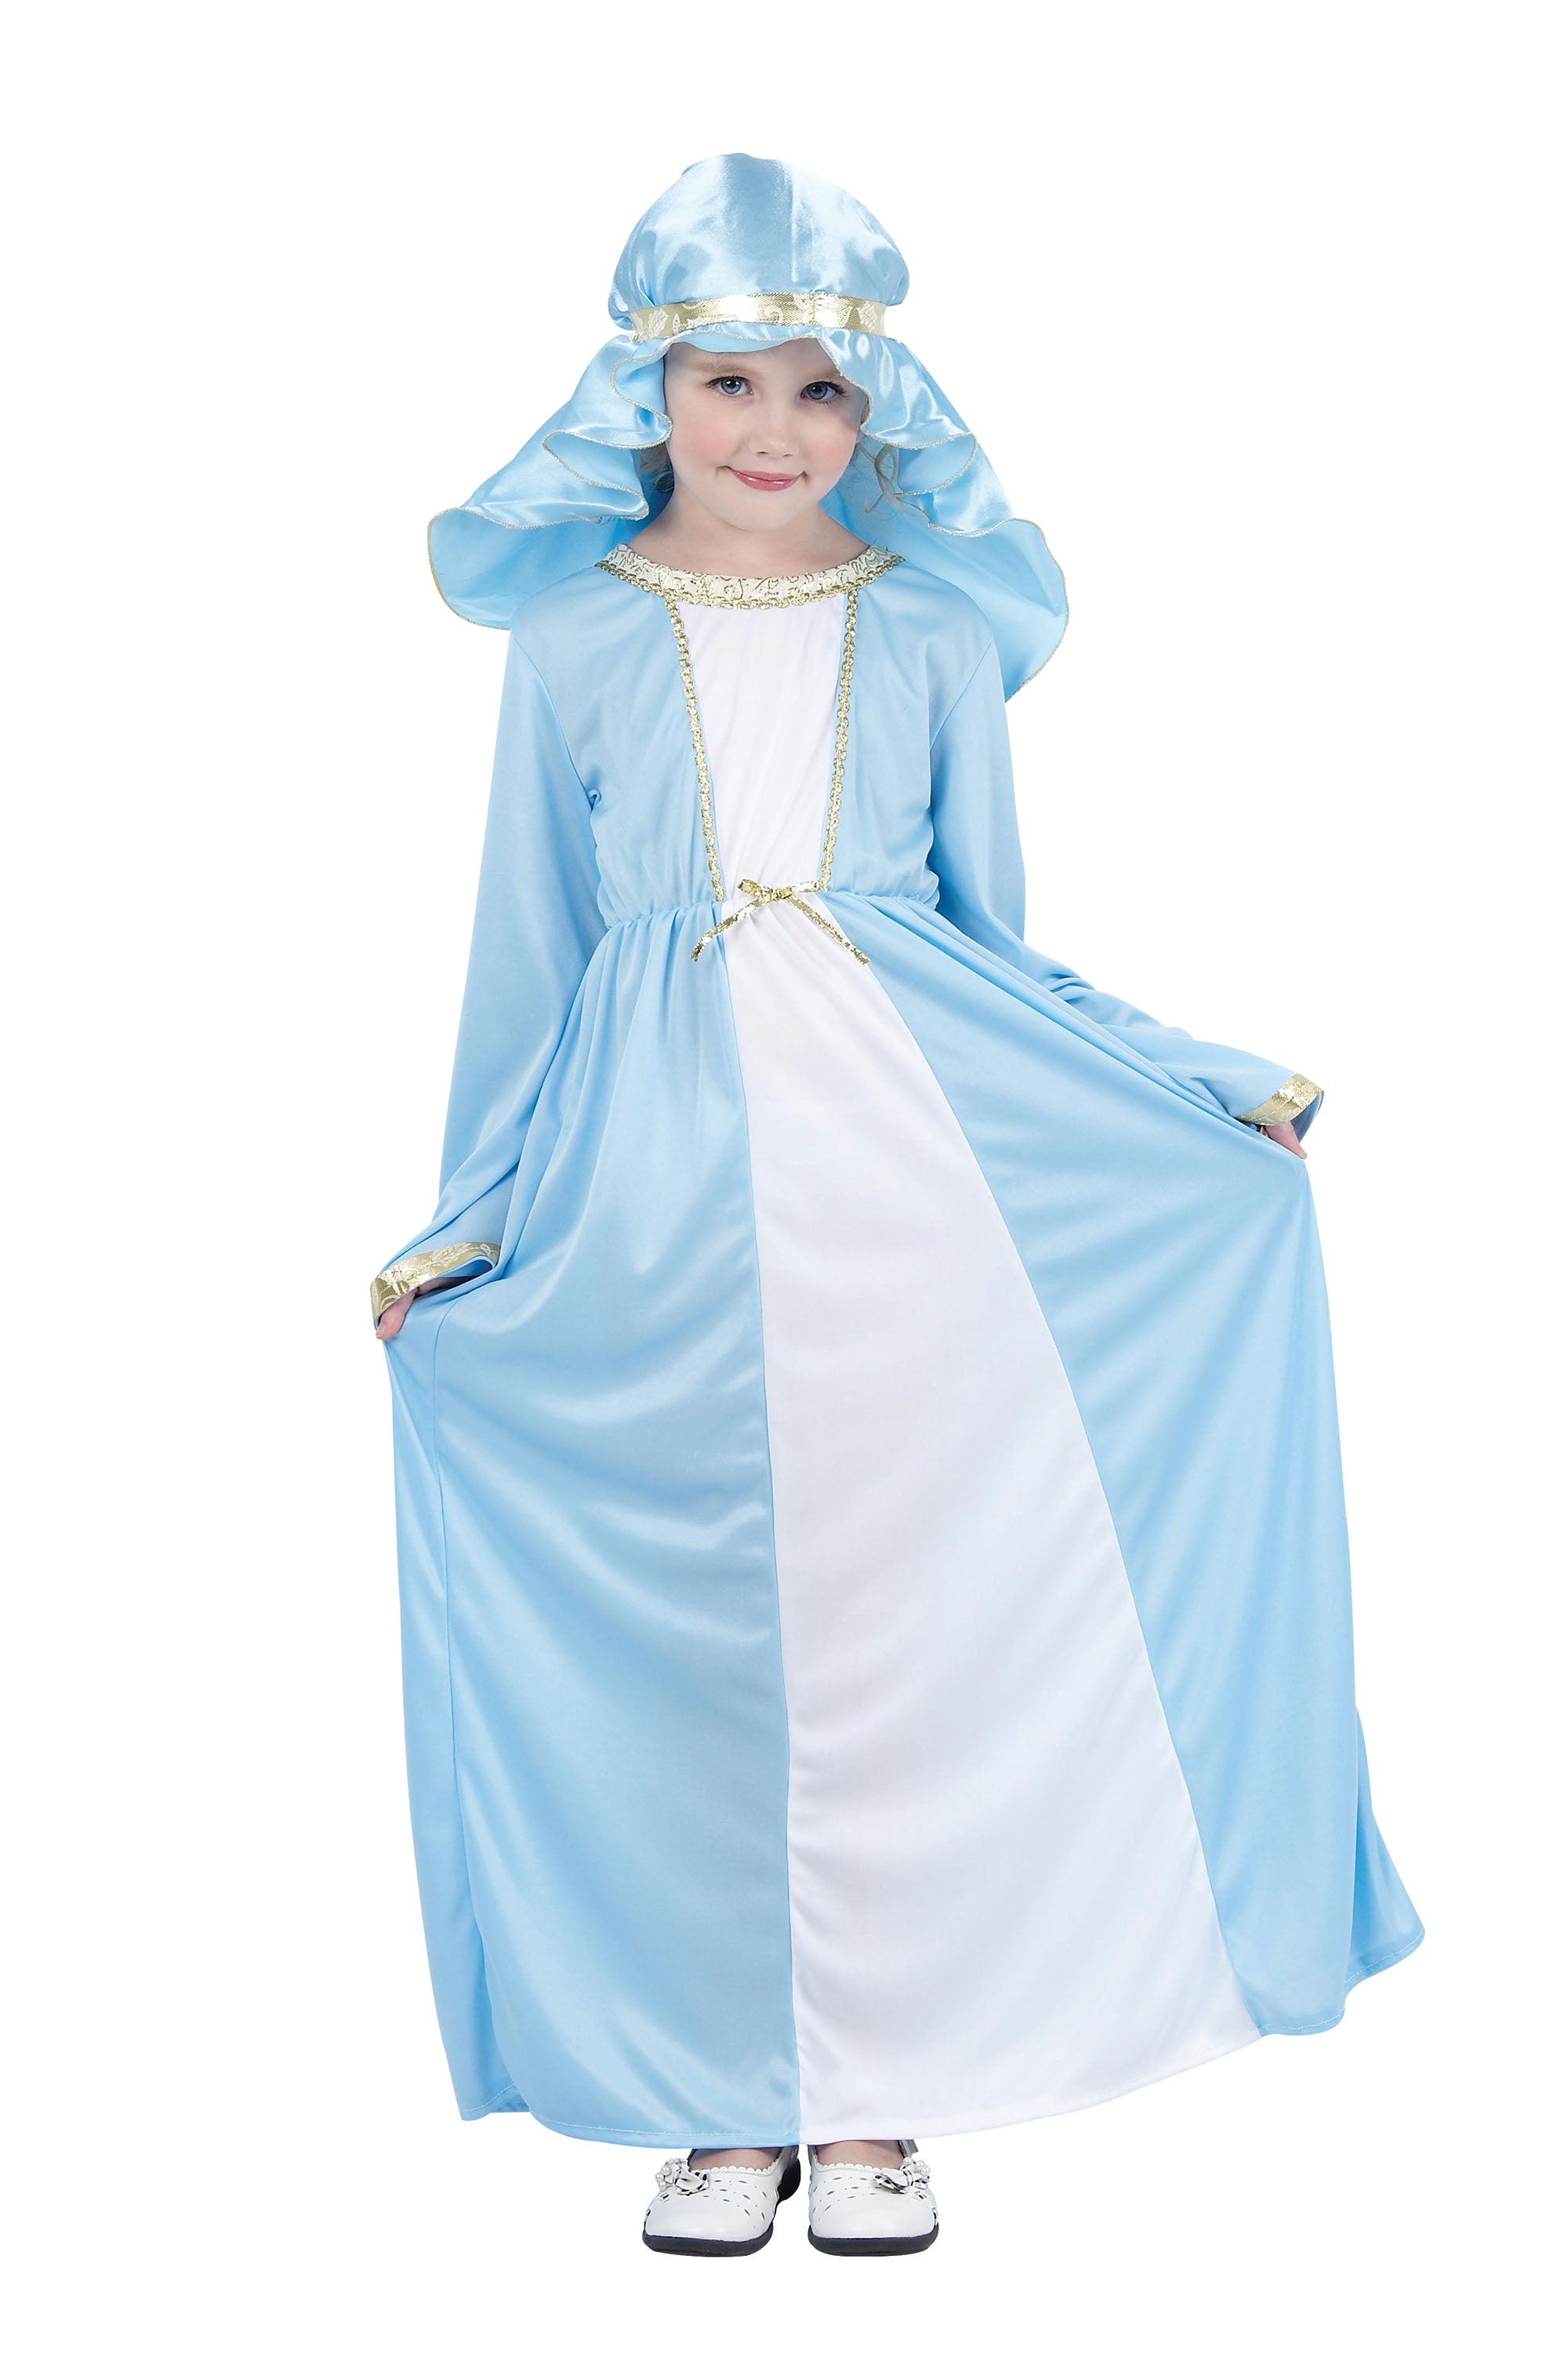 Girls Mary Costume Nativity Play Costume